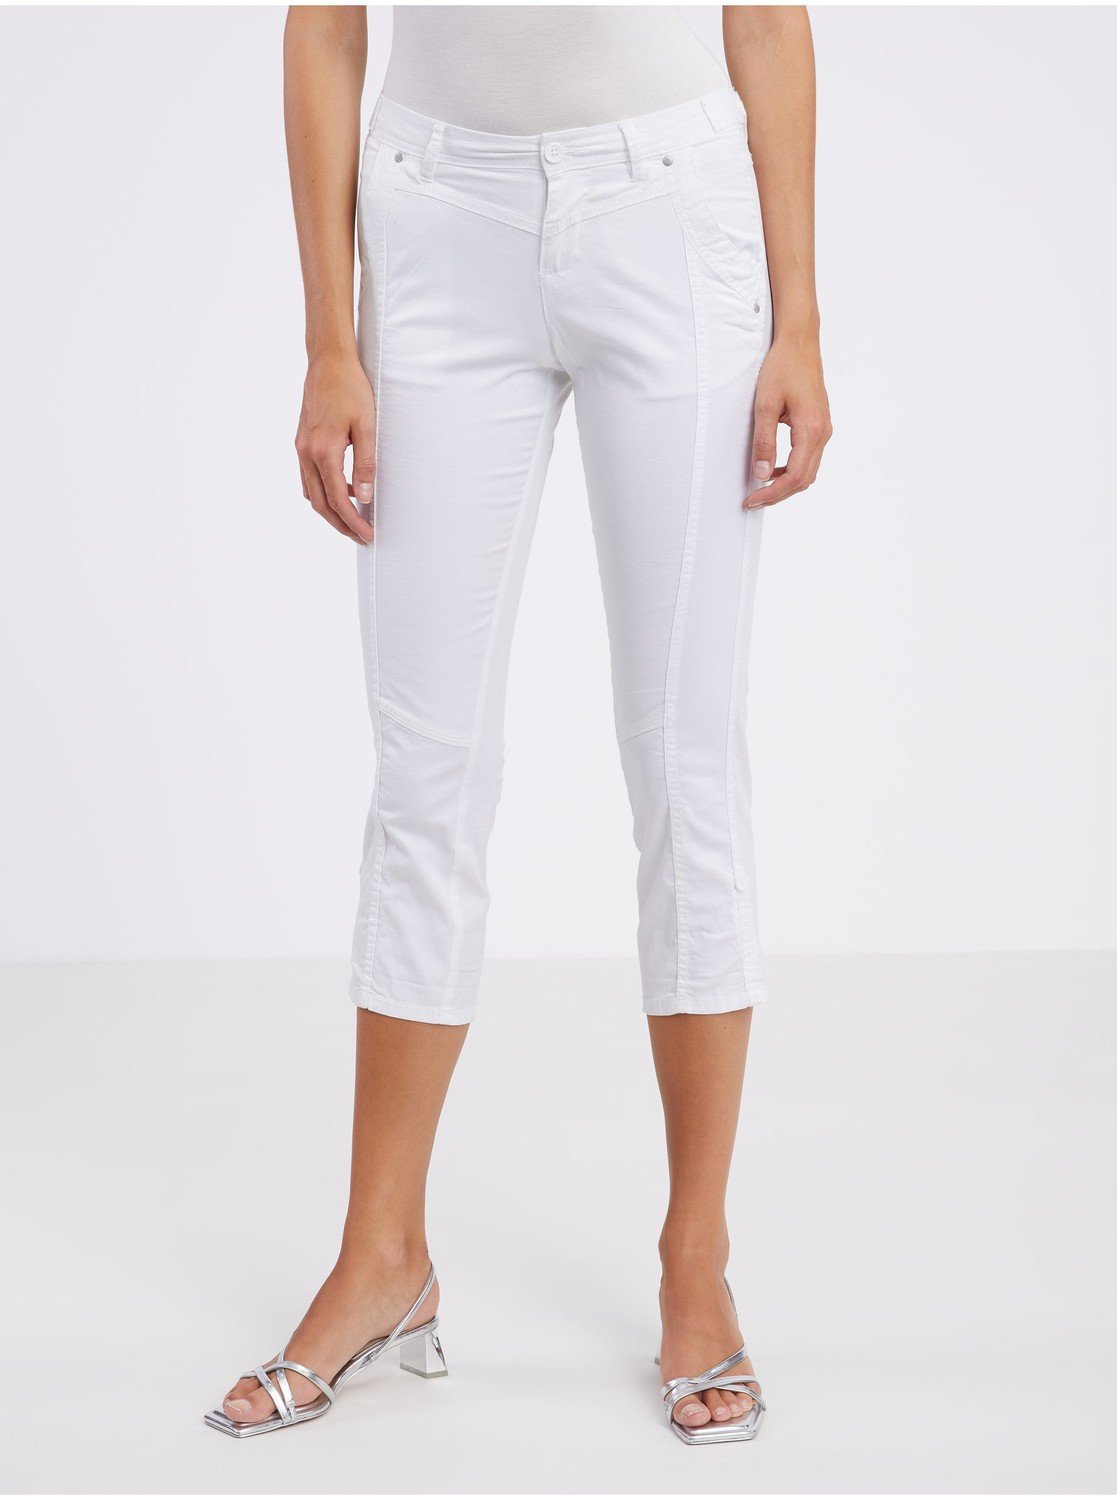 Bílé dámské tříčtvrteční kalhoty CAMAIEU - Dámské